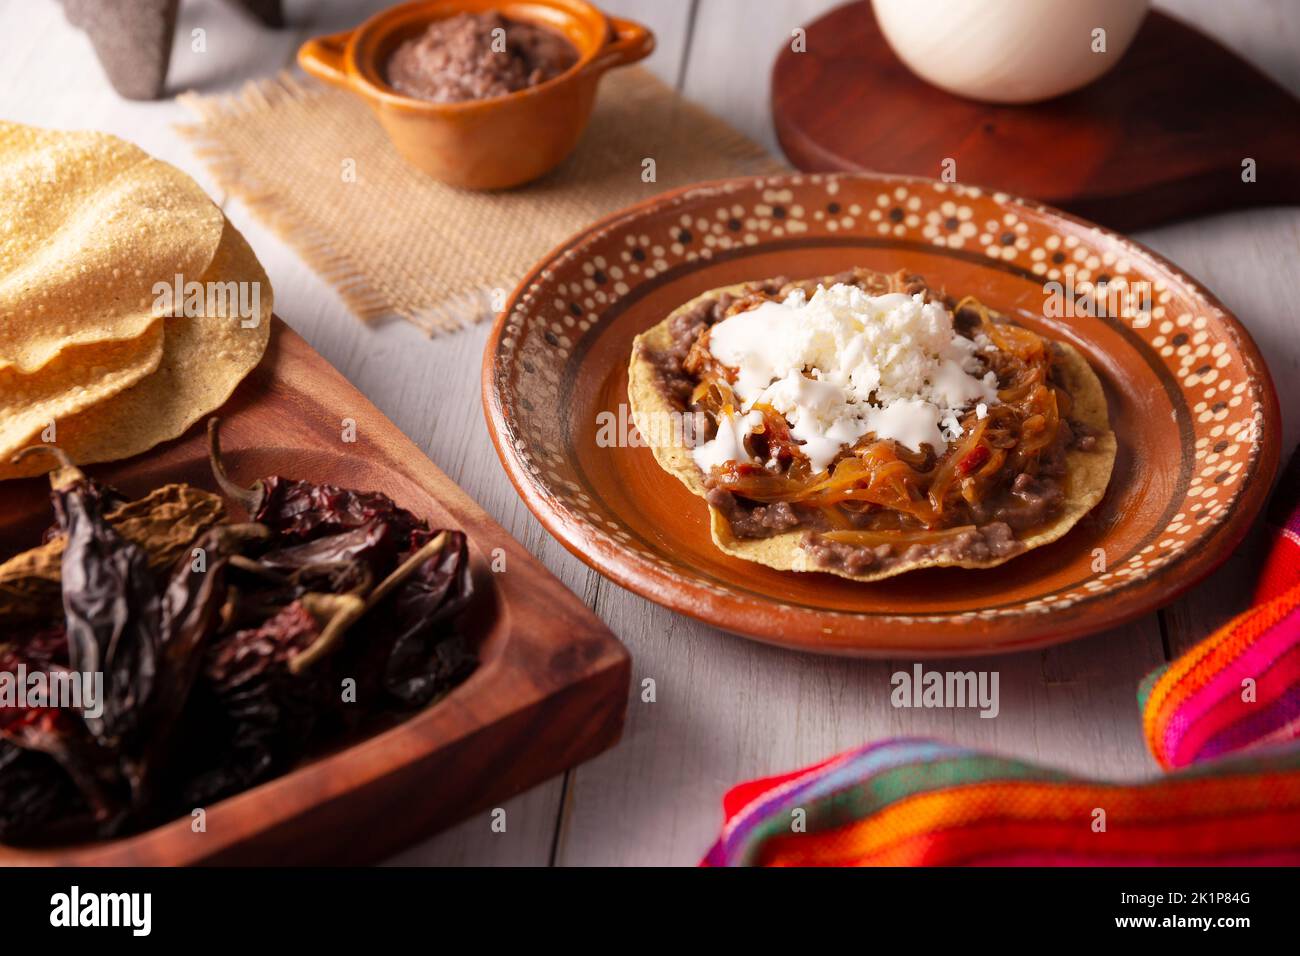 Tostada de Tinga de Res. Typisch mexikanisches Gericht, das hauptsächlich mit geschreddertem Rindfleisch, Zwiebeln und getrockneten Chilischoten zubereitet wird. Es ist üblich, es auf Mais-Tortill zu servieren Stockfoto